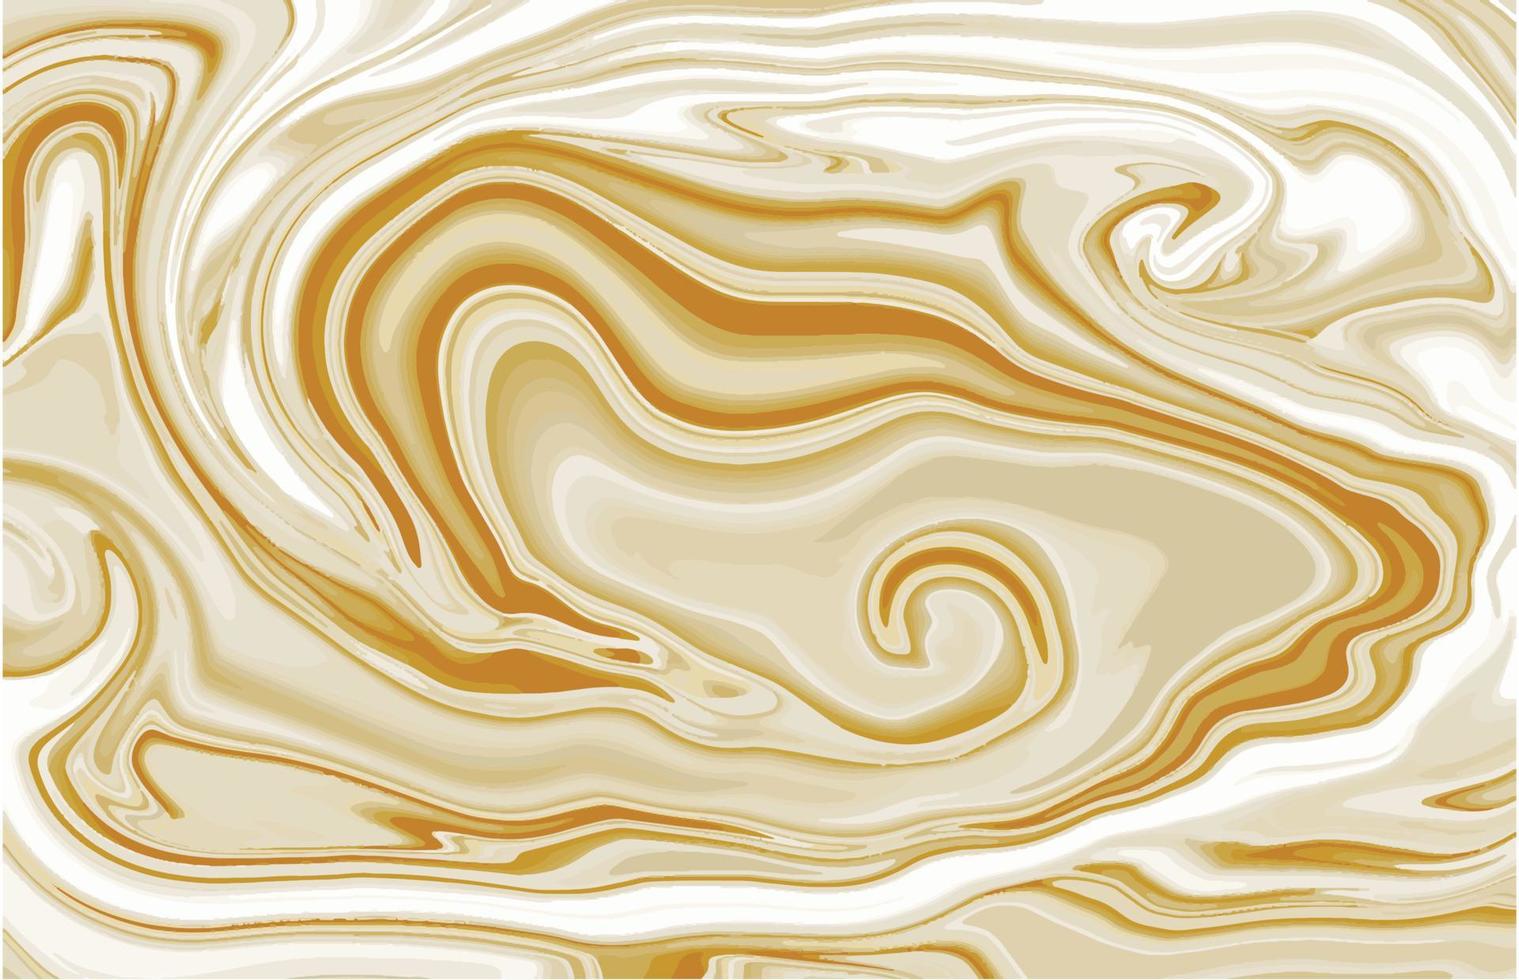 goldene beige flüssige marmorbeschaffenheit cremefarbene abstrakte hintergrundvektorillustration pastellfarben weiße fließende streifen vektor